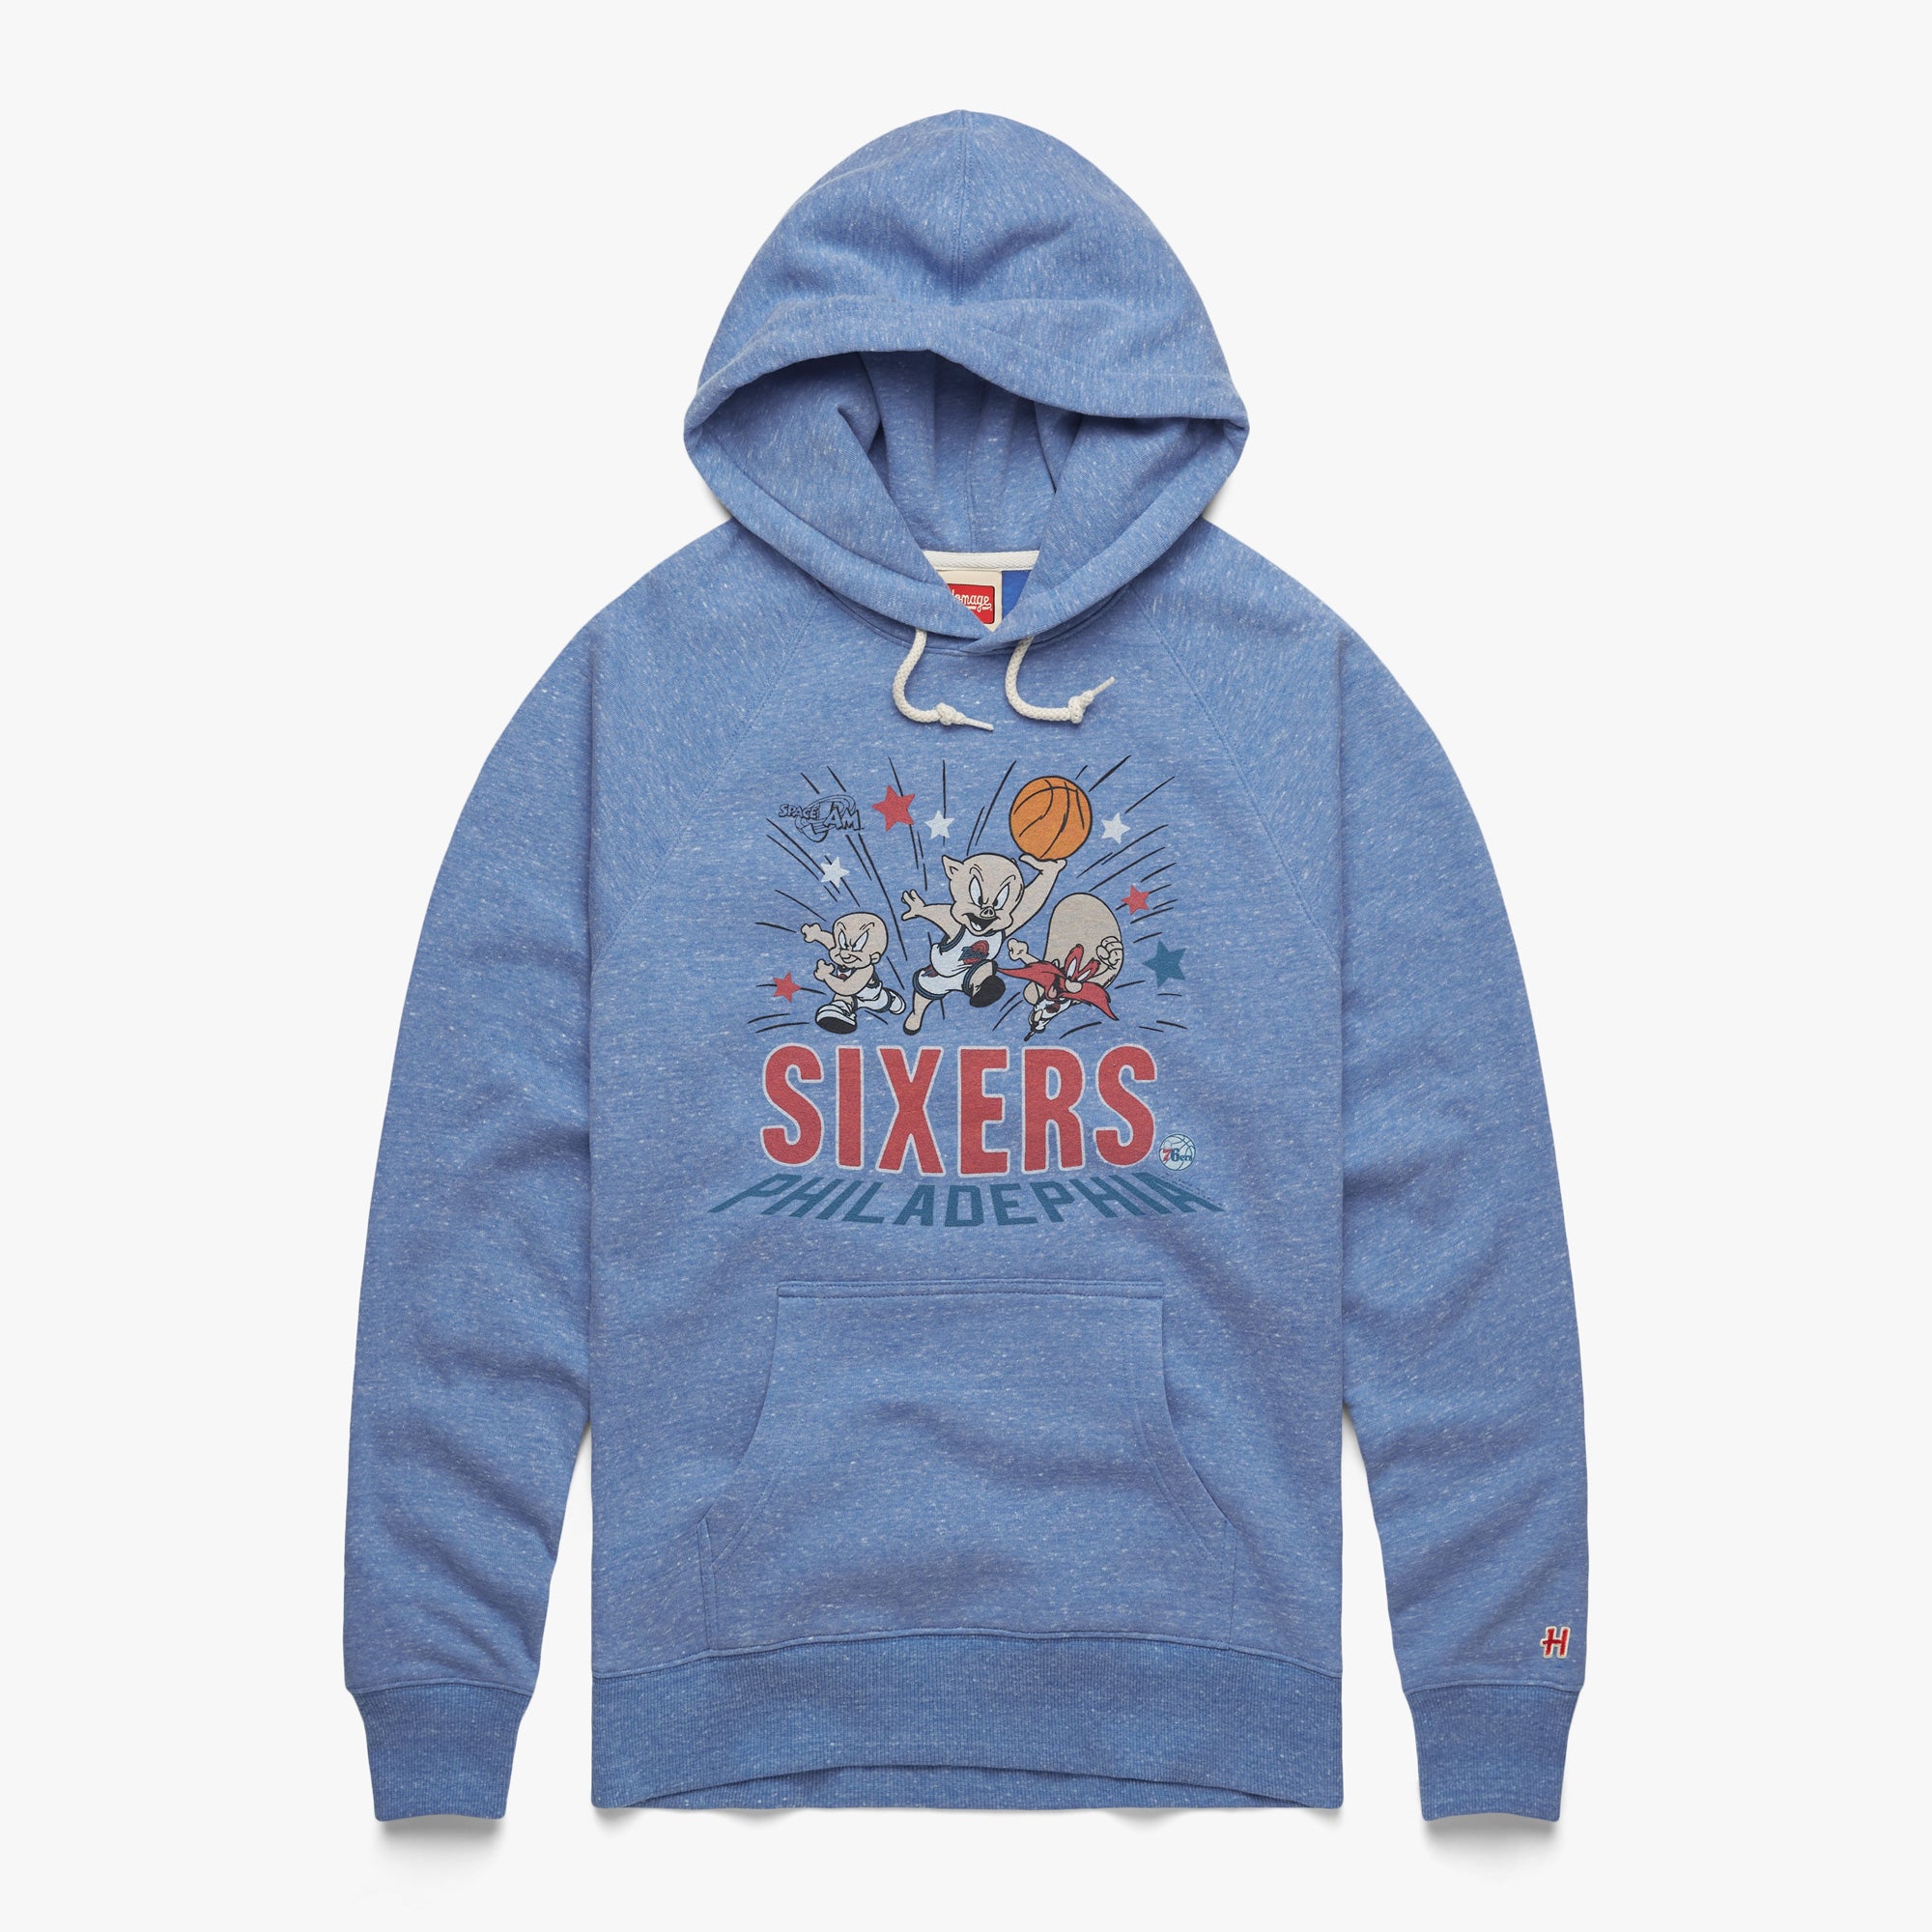 sixers throwback hoodie